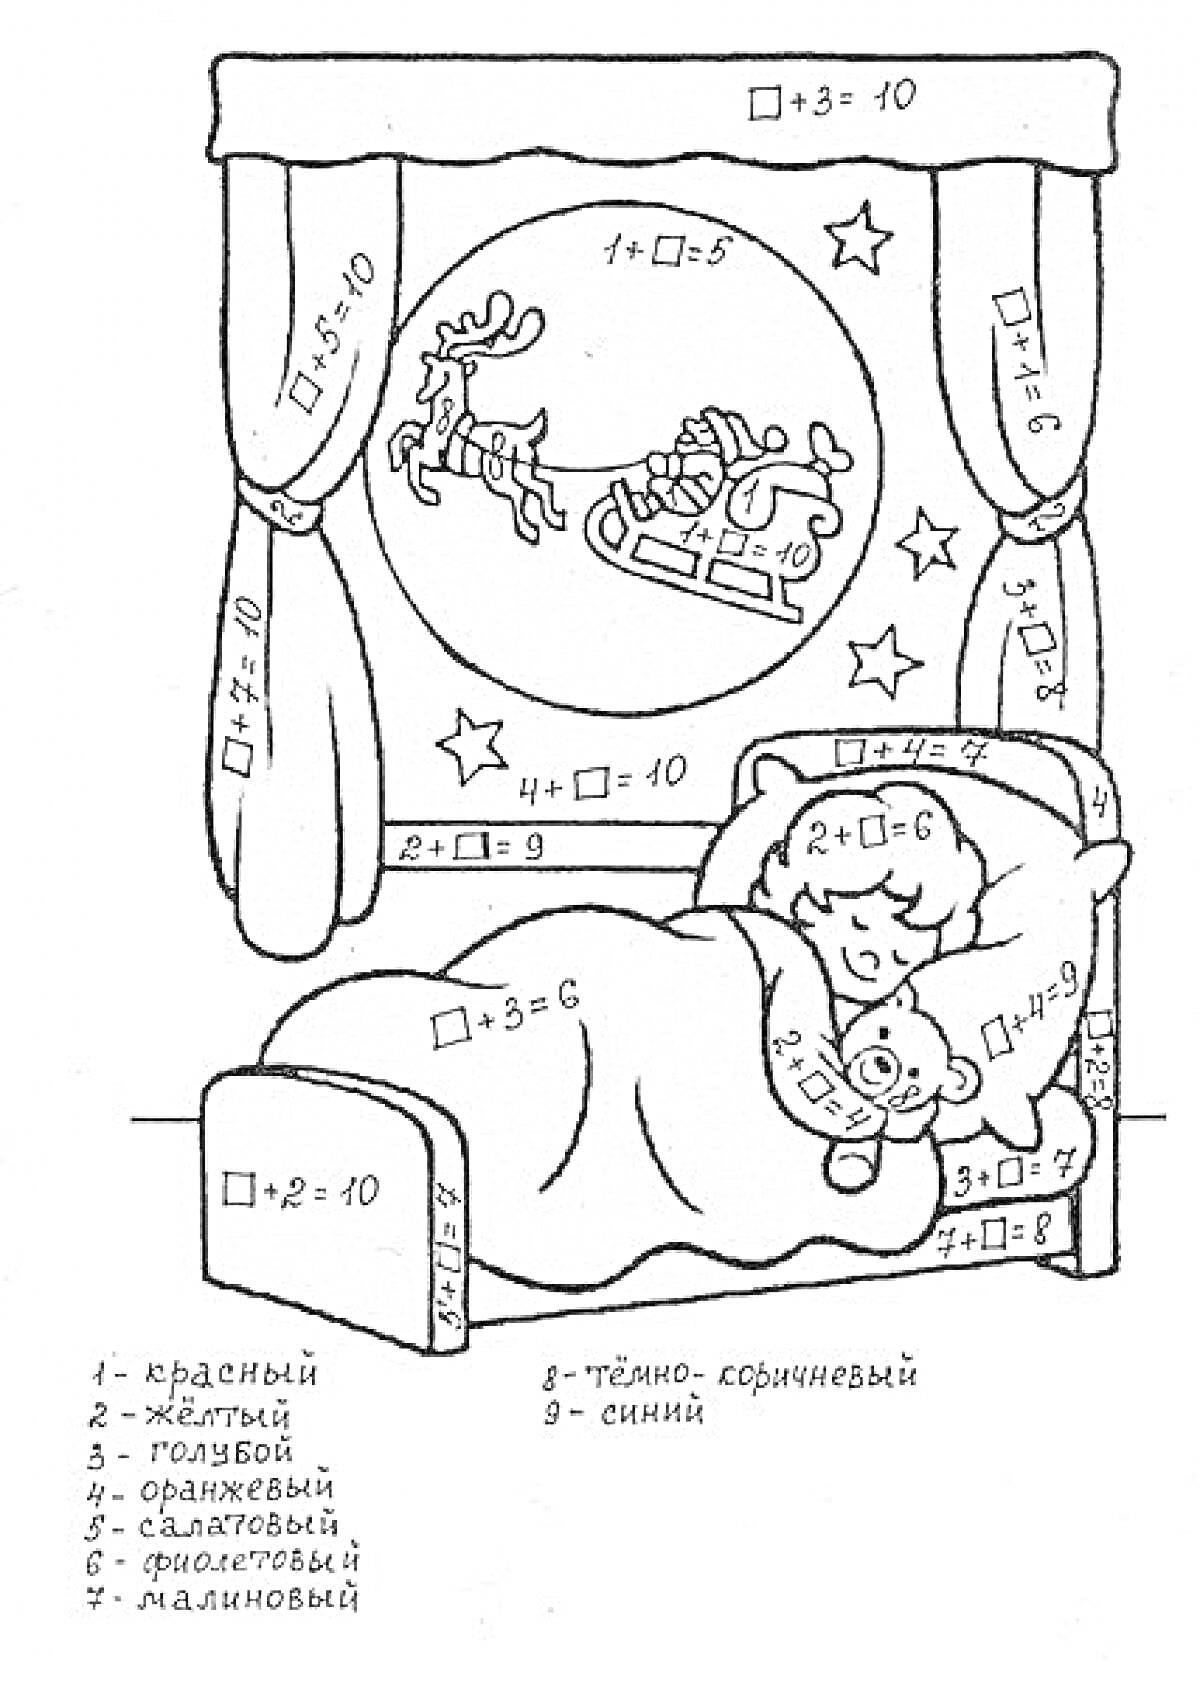  Ребенок, спящий в кровати с плюшевым мишкой, у окна с санями Деда Мороза и занавесками; примеры в квадратных скобках и цветовая легенда